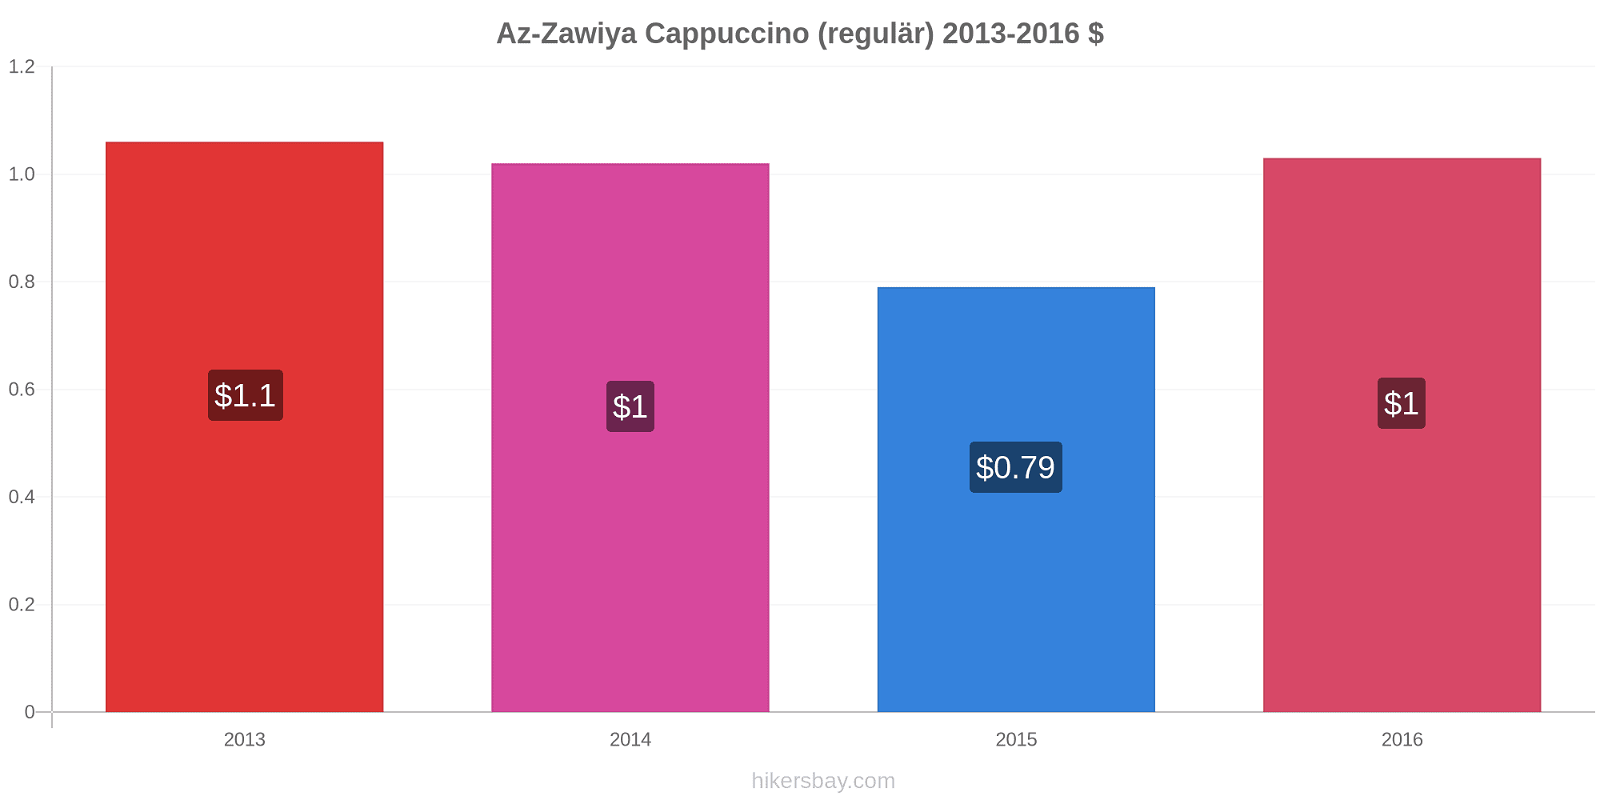 Az-Zawiya Preisänderungen Cappuccino (regulär) hikersbay.com